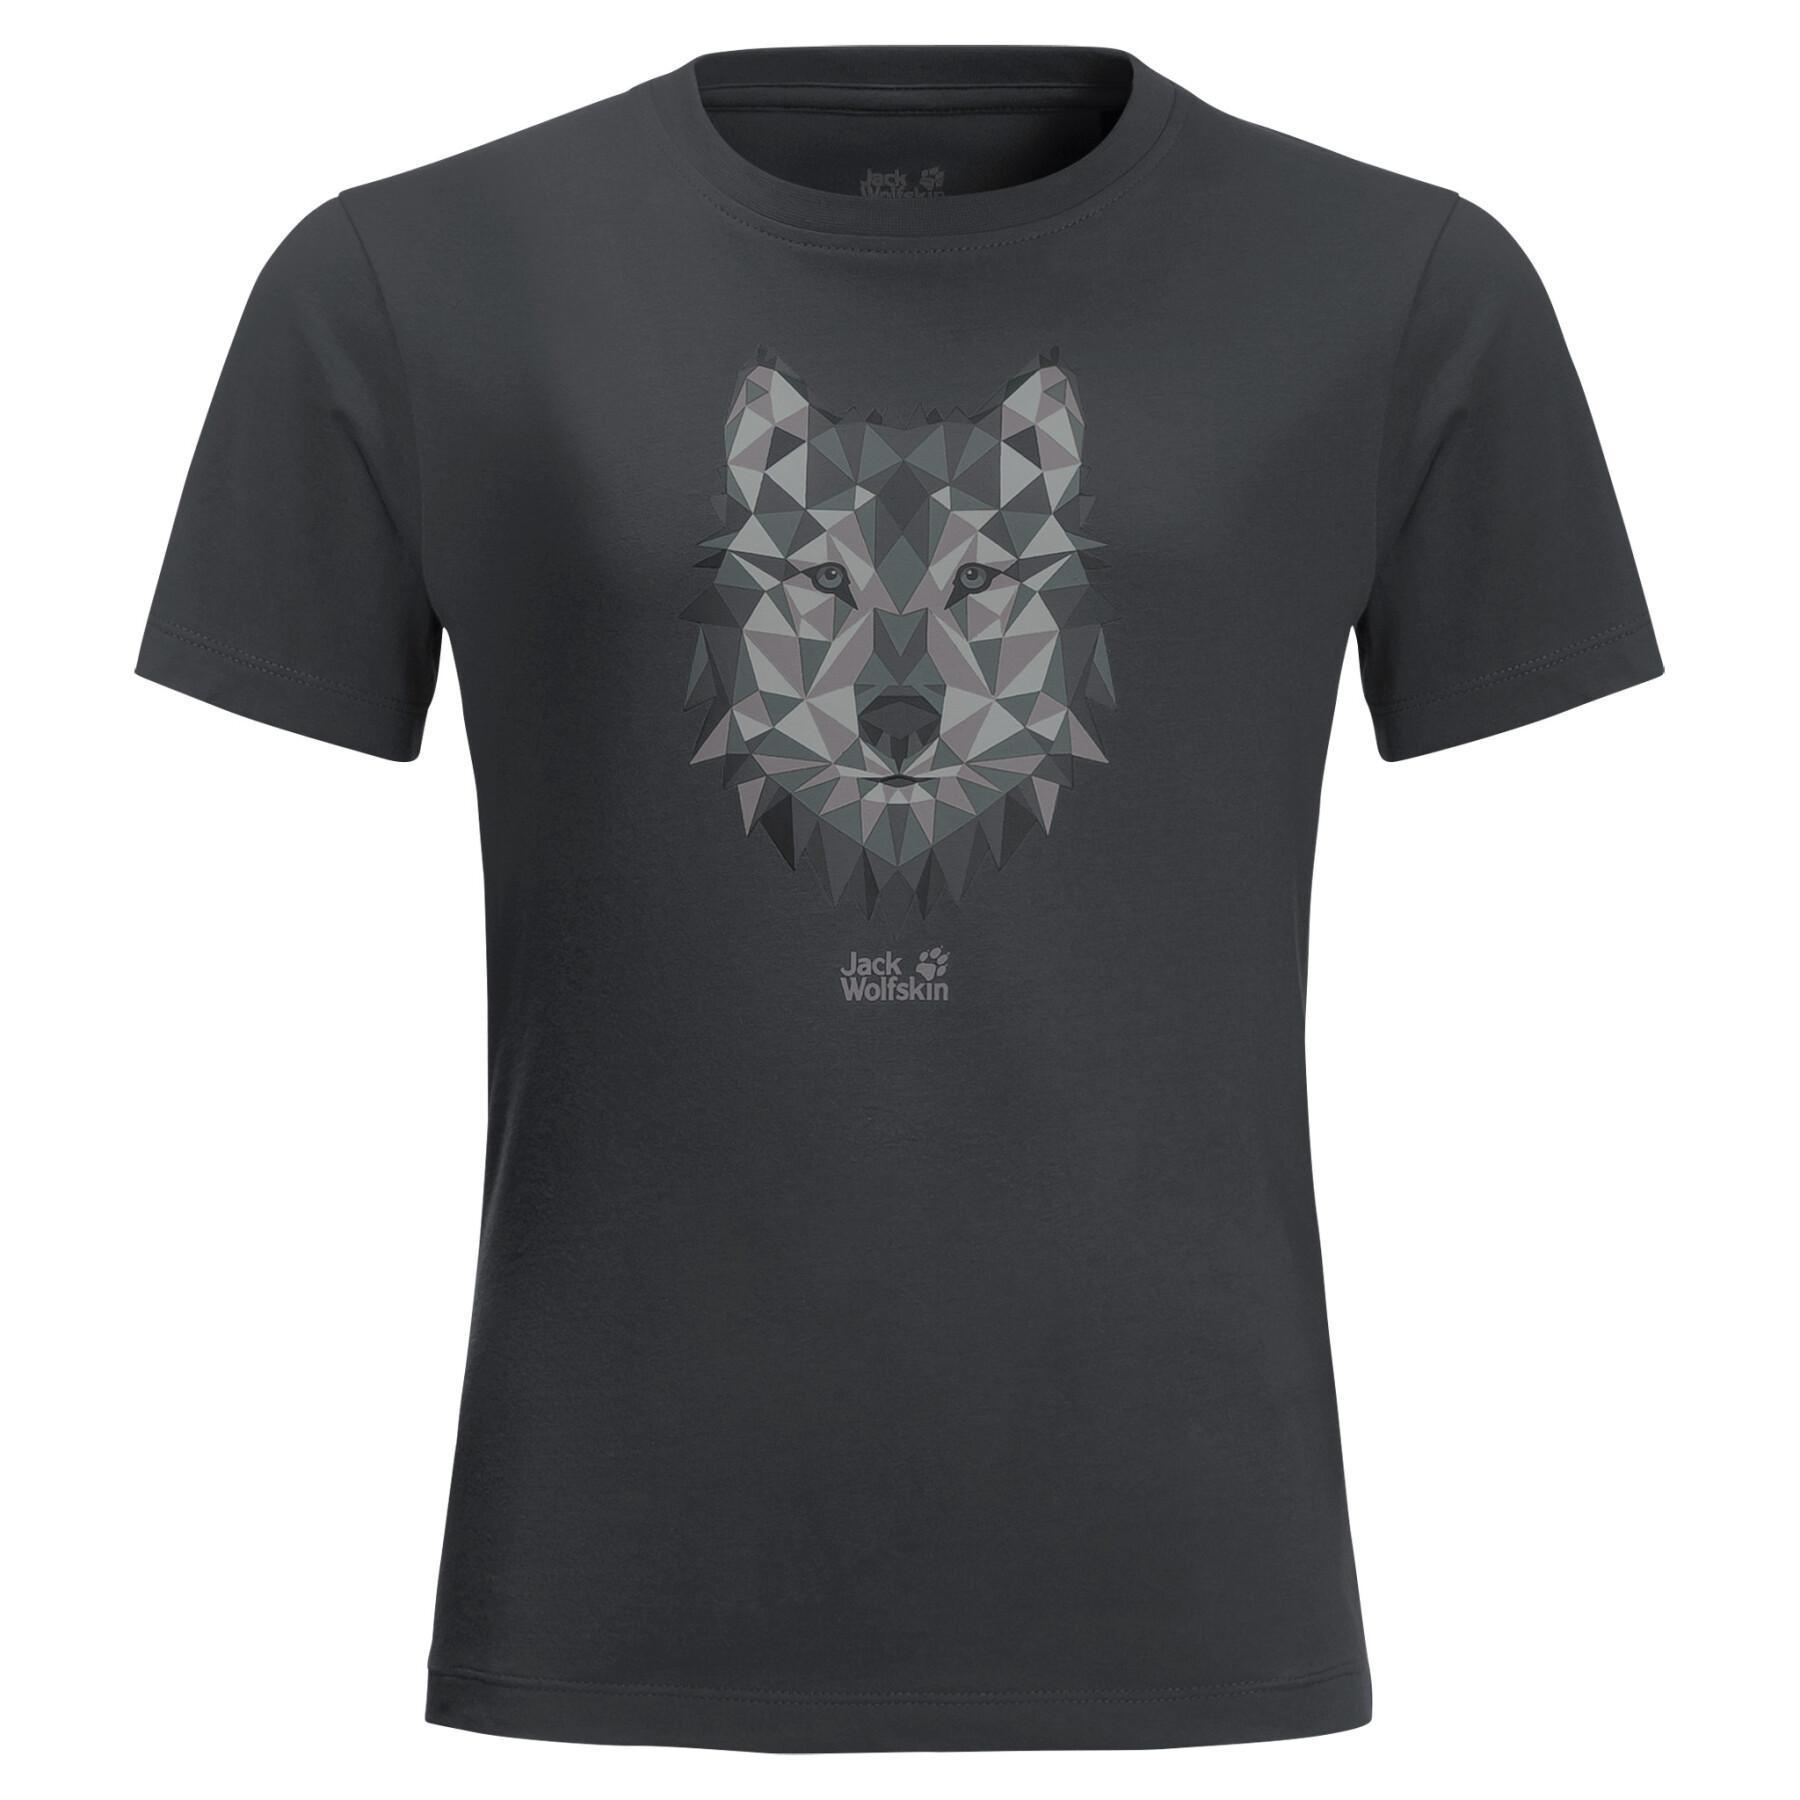 Kinder T-Shirt Jack Wolfskin Brand Wolf